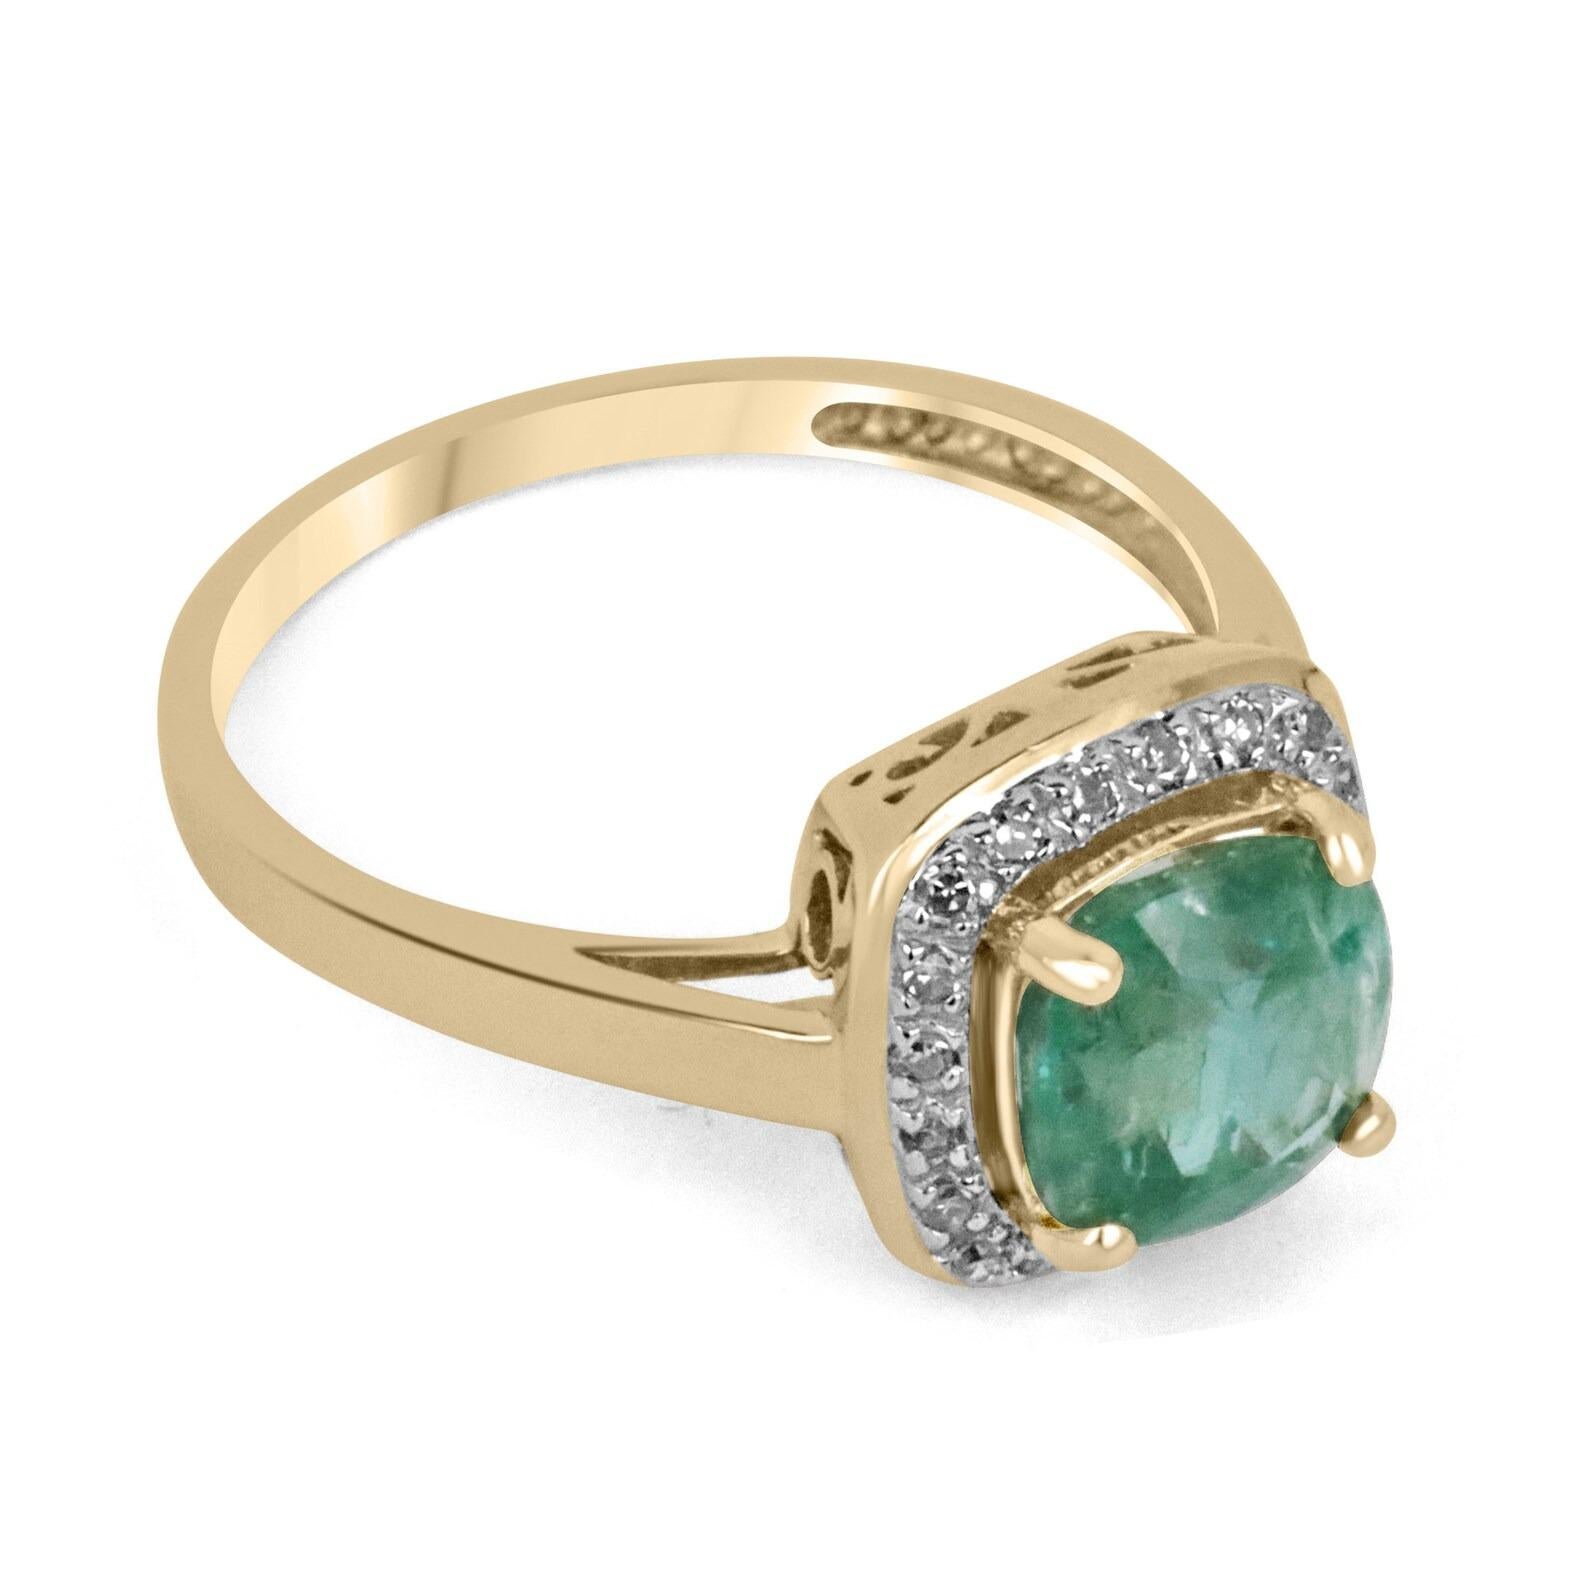 Ein atemberaubender Smaragd- und Diamantring für die rechte Hand/Verlobungsring. Der Mittelstein ist ein wunderschöner 2,66-karätiger, natürlicher Smaragd im Kissenschliff, der aus Sambia stammt. Dieser Edelstein zeigt eine warme bläulich-grüne